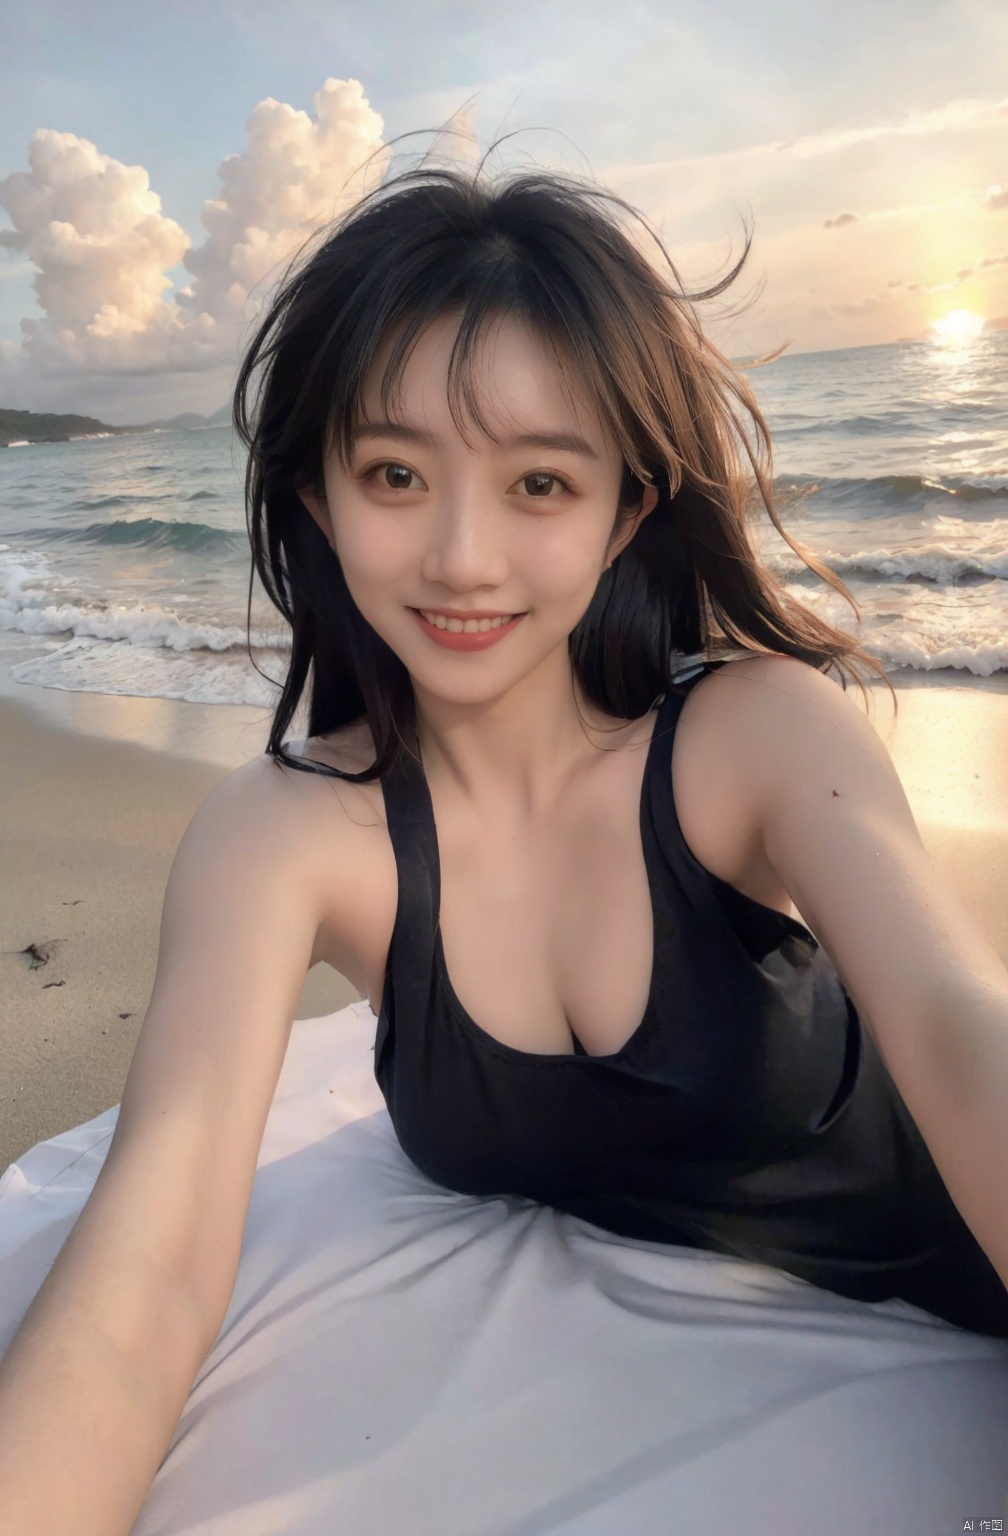  1 Girl, Selfie, Sea, Wind, Messy Hair, Sunset, Beach, (Aesthetics & Atmosphere: 1.2), Black **** Top, Smile,naked, Lying down